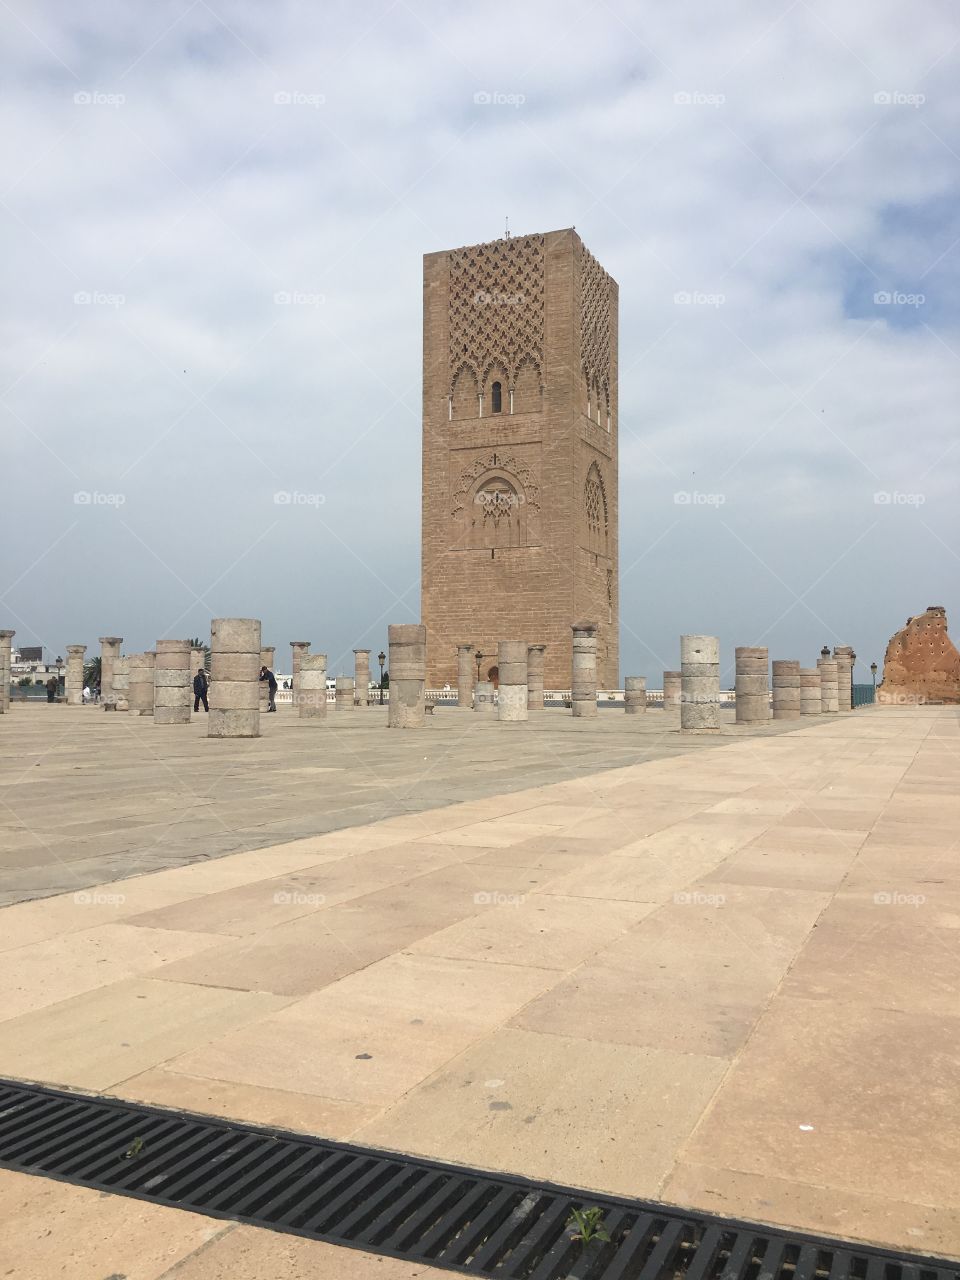 Rabat
Morocco